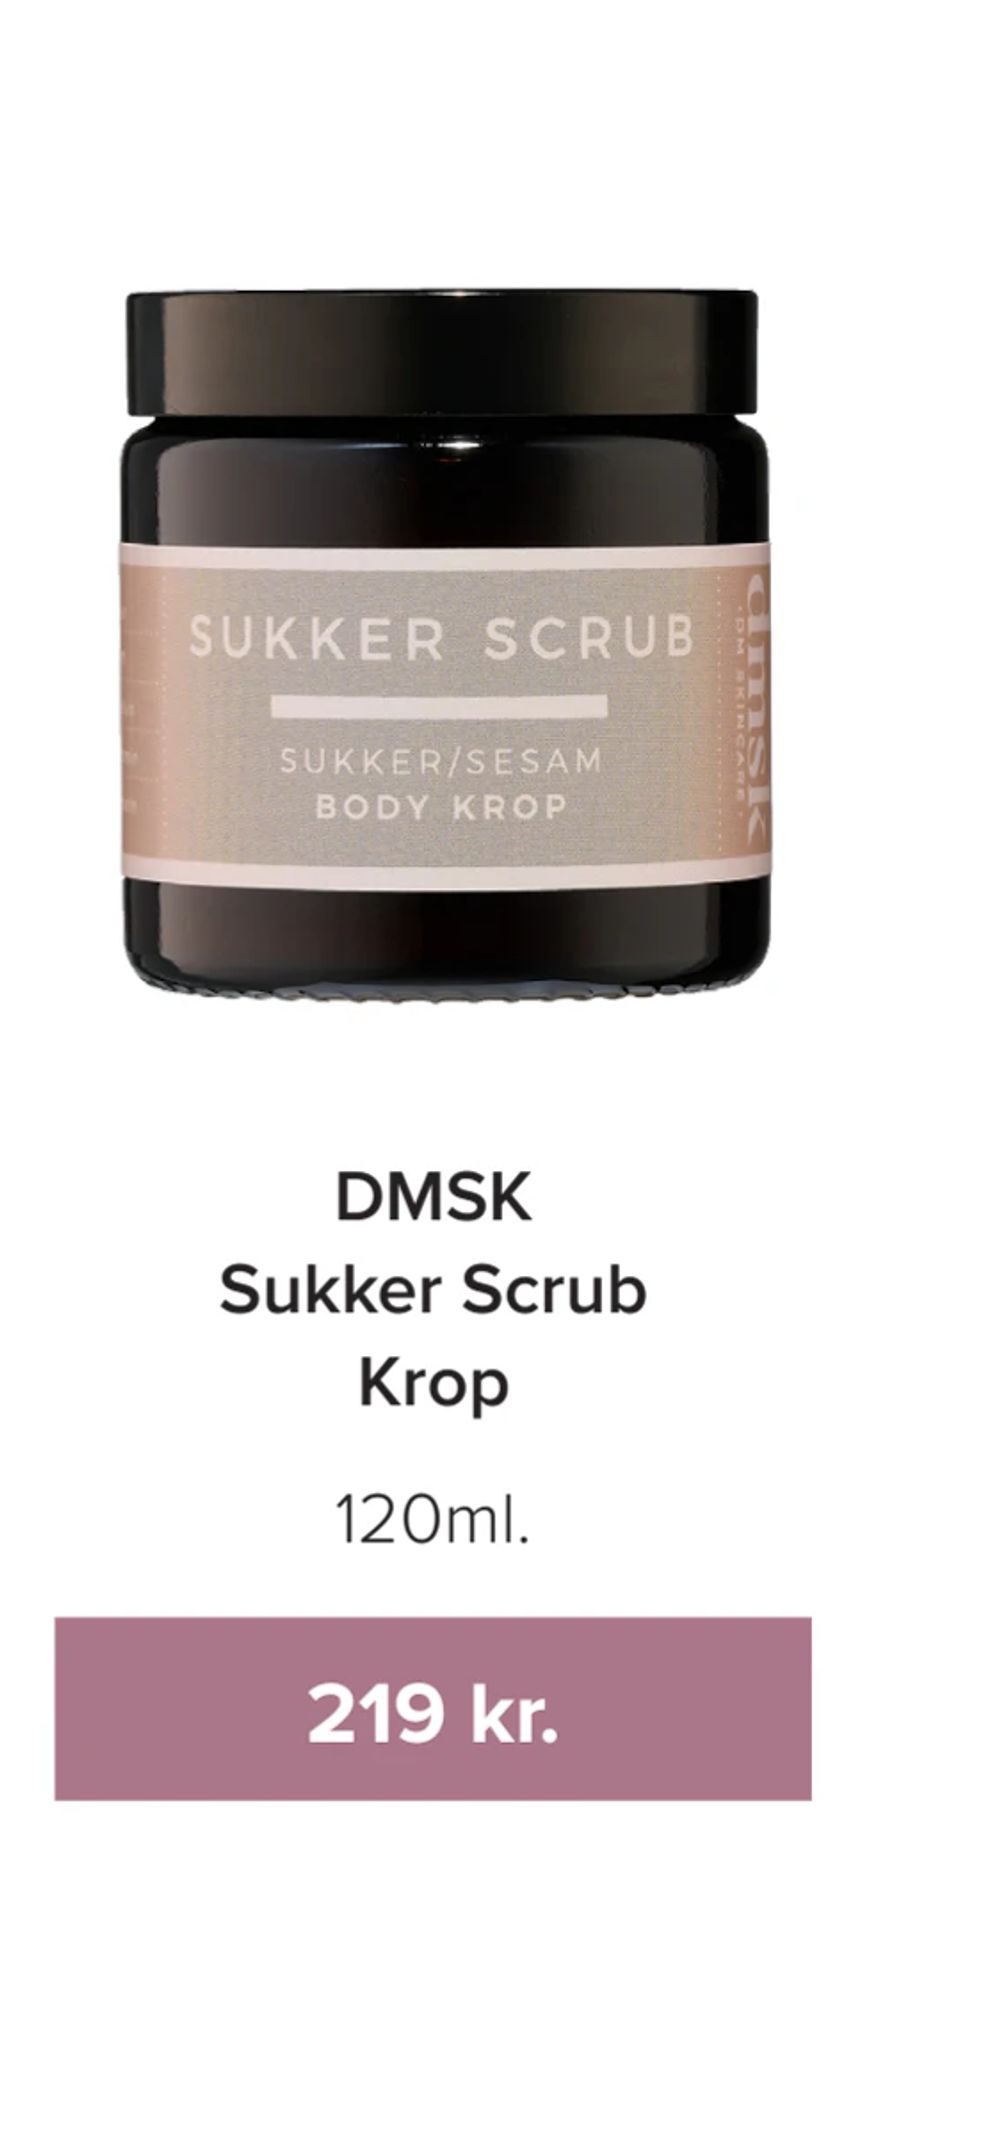 Tilbud på DMSK Sukker Scrub Krop fra Helsemin til 219 kr.